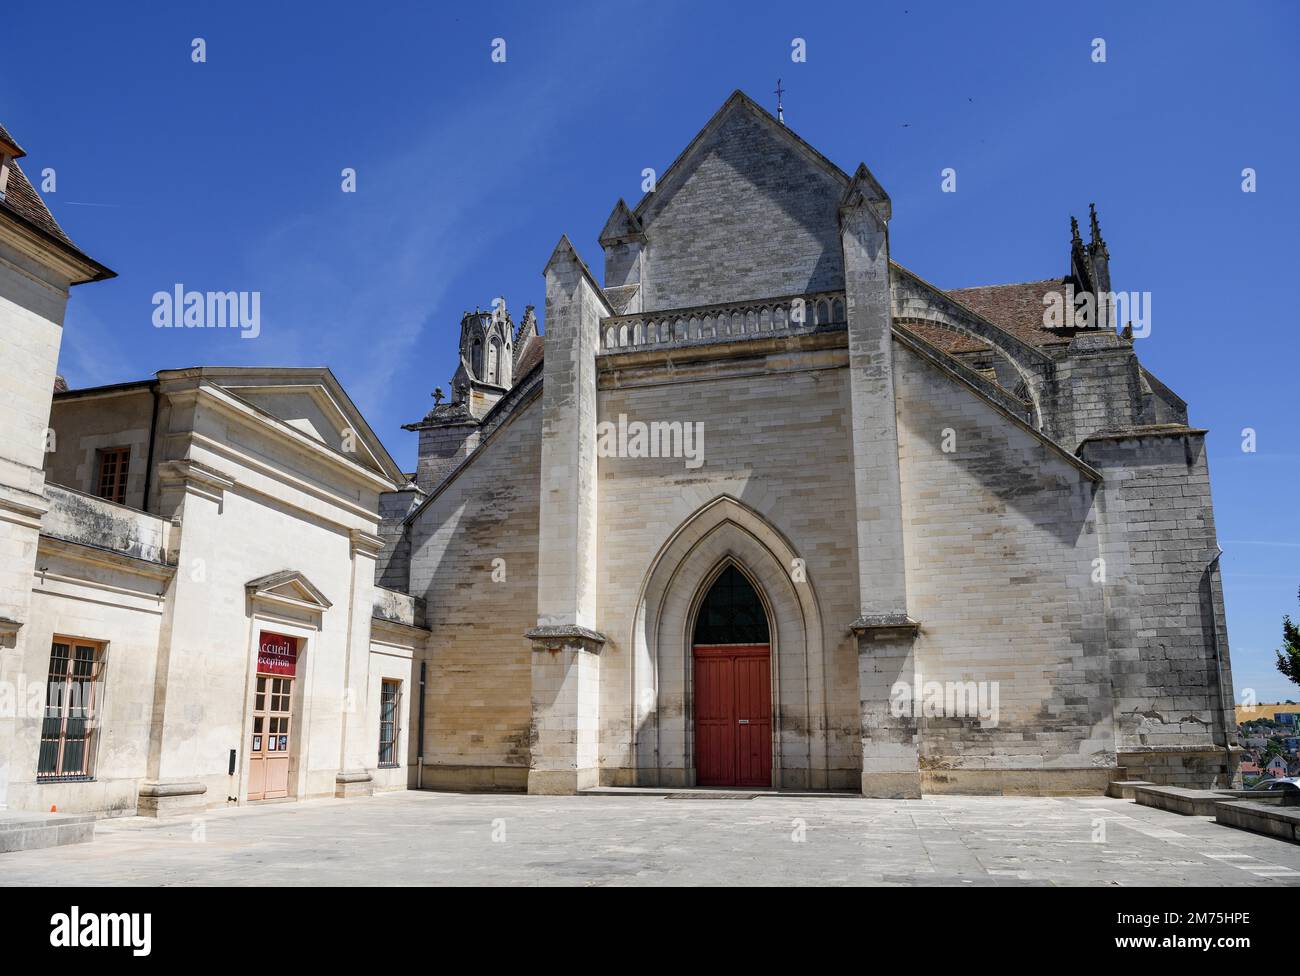 Abbaye Saint-Germain, Auxerre, département de l'Yonne, région Bourgogne-Franche-Comté, Bourgogne, France Banque D'Images